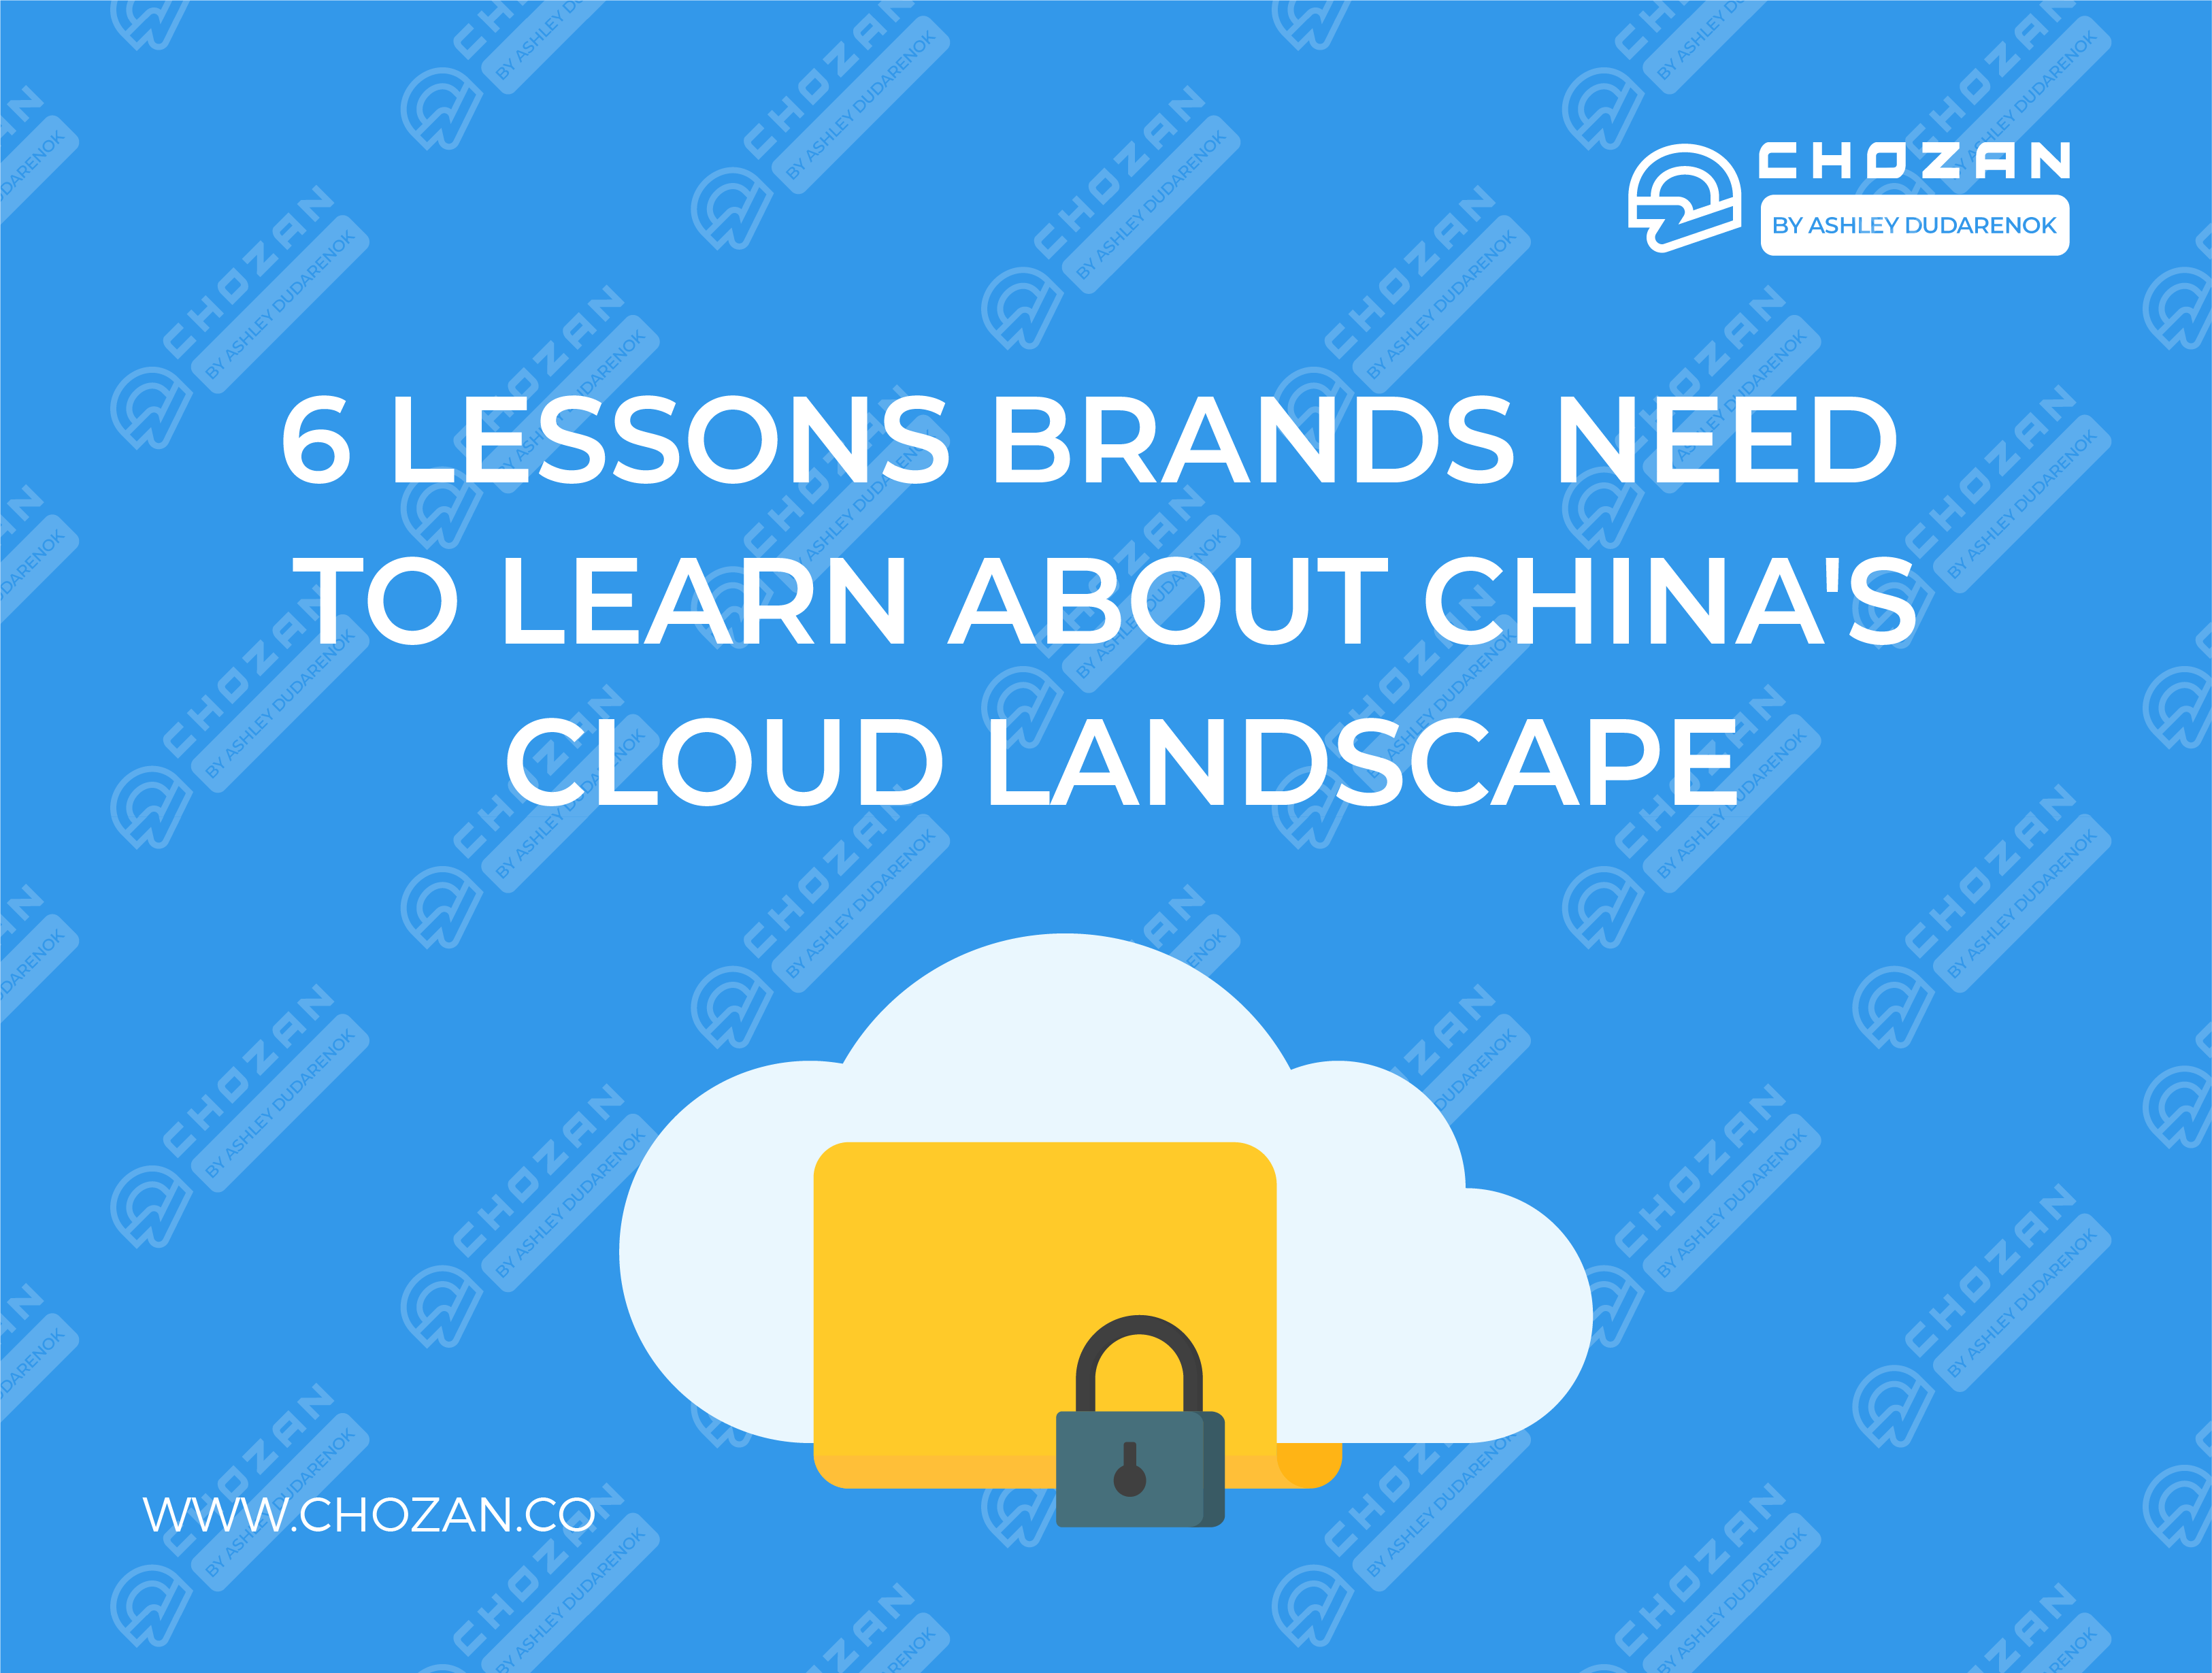 China's cloud landscape blog article